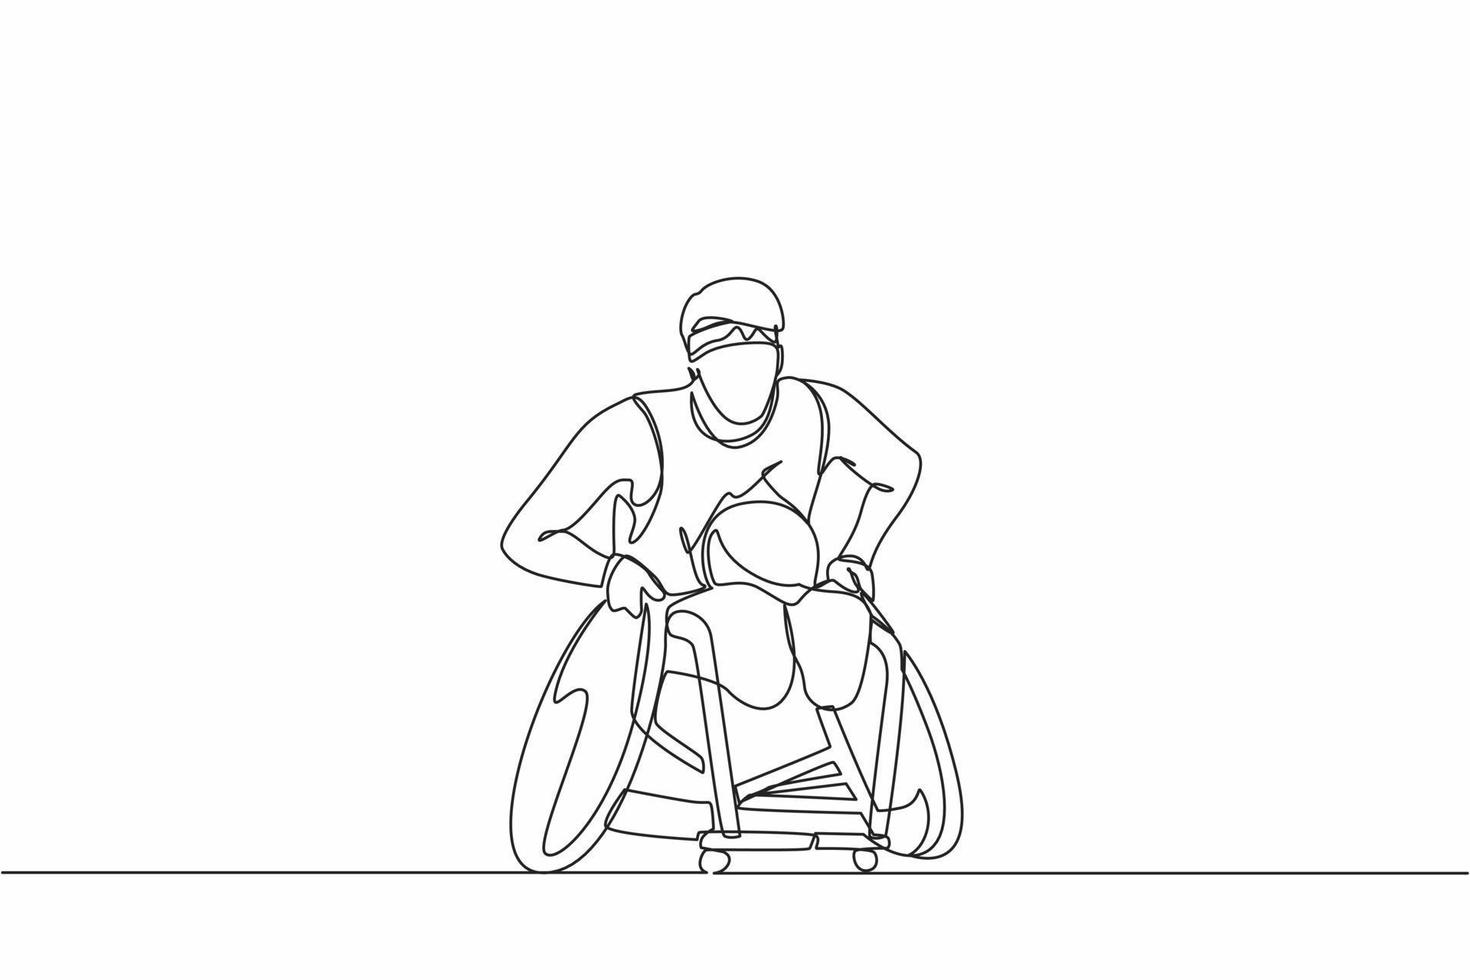 un sportif de dessin continu d'une ligne joue au rugby lors d'une compétition de sport en fauteuil roulant. joueur de rugby handicapé en fauteuil roulant. athlète souffrant de troubles physiques. graphique vectoriel de conception de dessin à une seule ligne